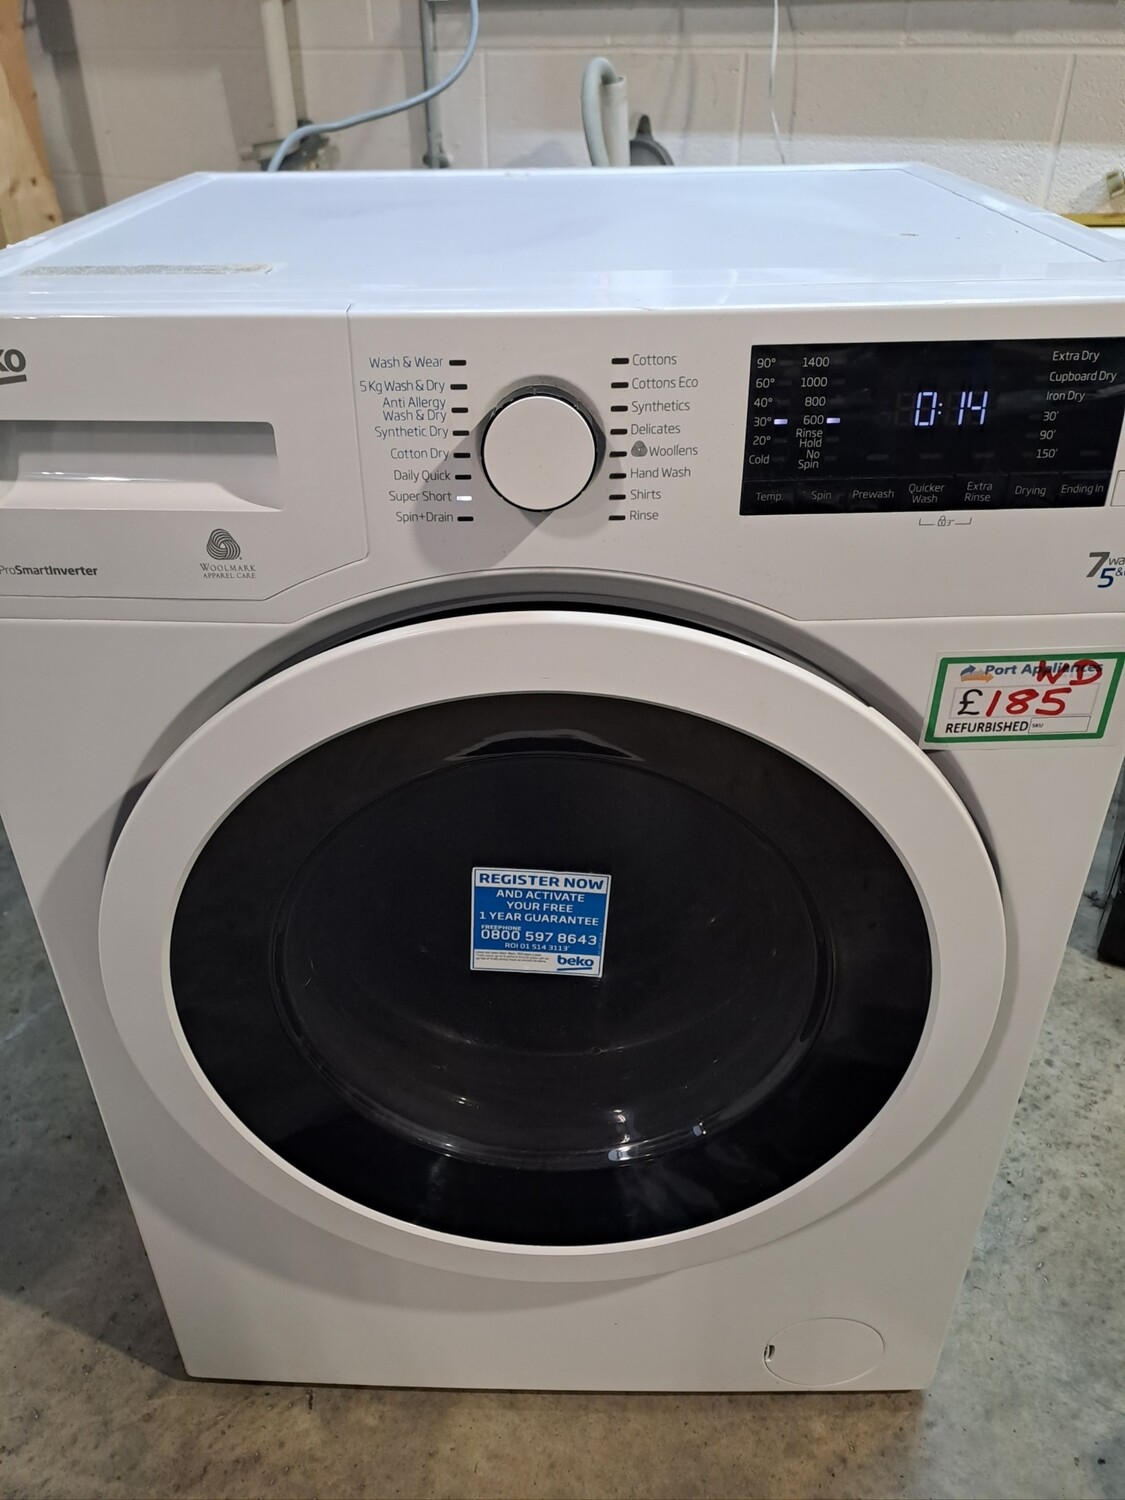 Beko WDR7543121W 7+5kg Load 1400 Spin Washing Machine Washer Dryer - White - Refurbished - 6 Month Guarantee